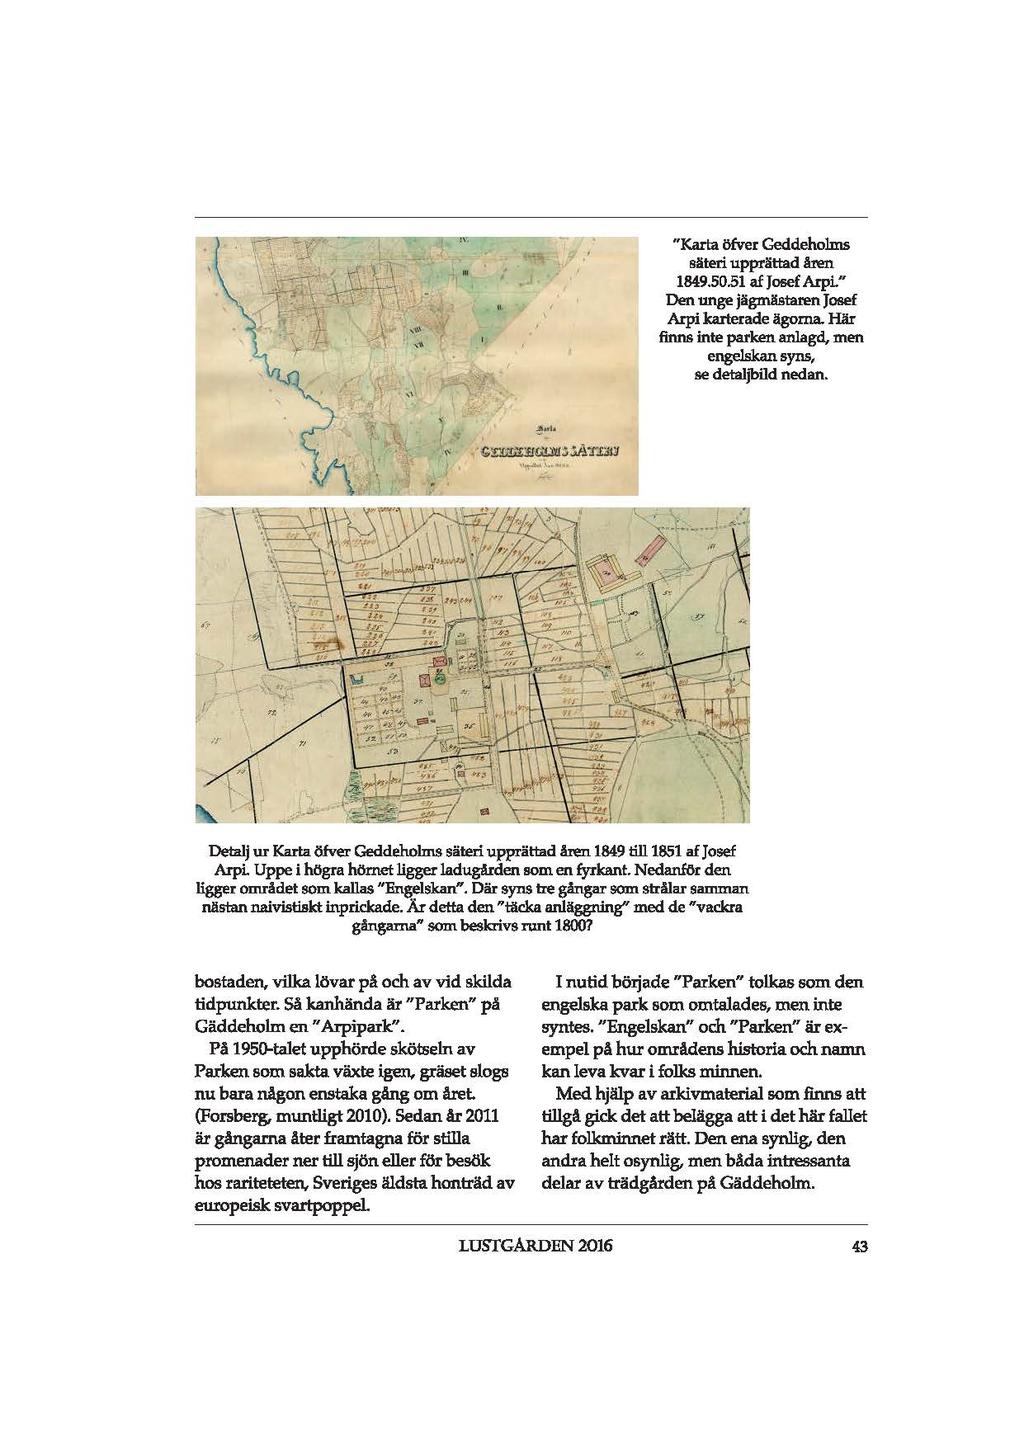 "Karta öfver Geddeholms säteri upprättad åren 1849,50.51 af Josef ArpL " Den unge jägmästaren Josef Arpi karterade ägorna. Här finns inte parken anlagd, men engelskan syns, se detaljbild nedan.